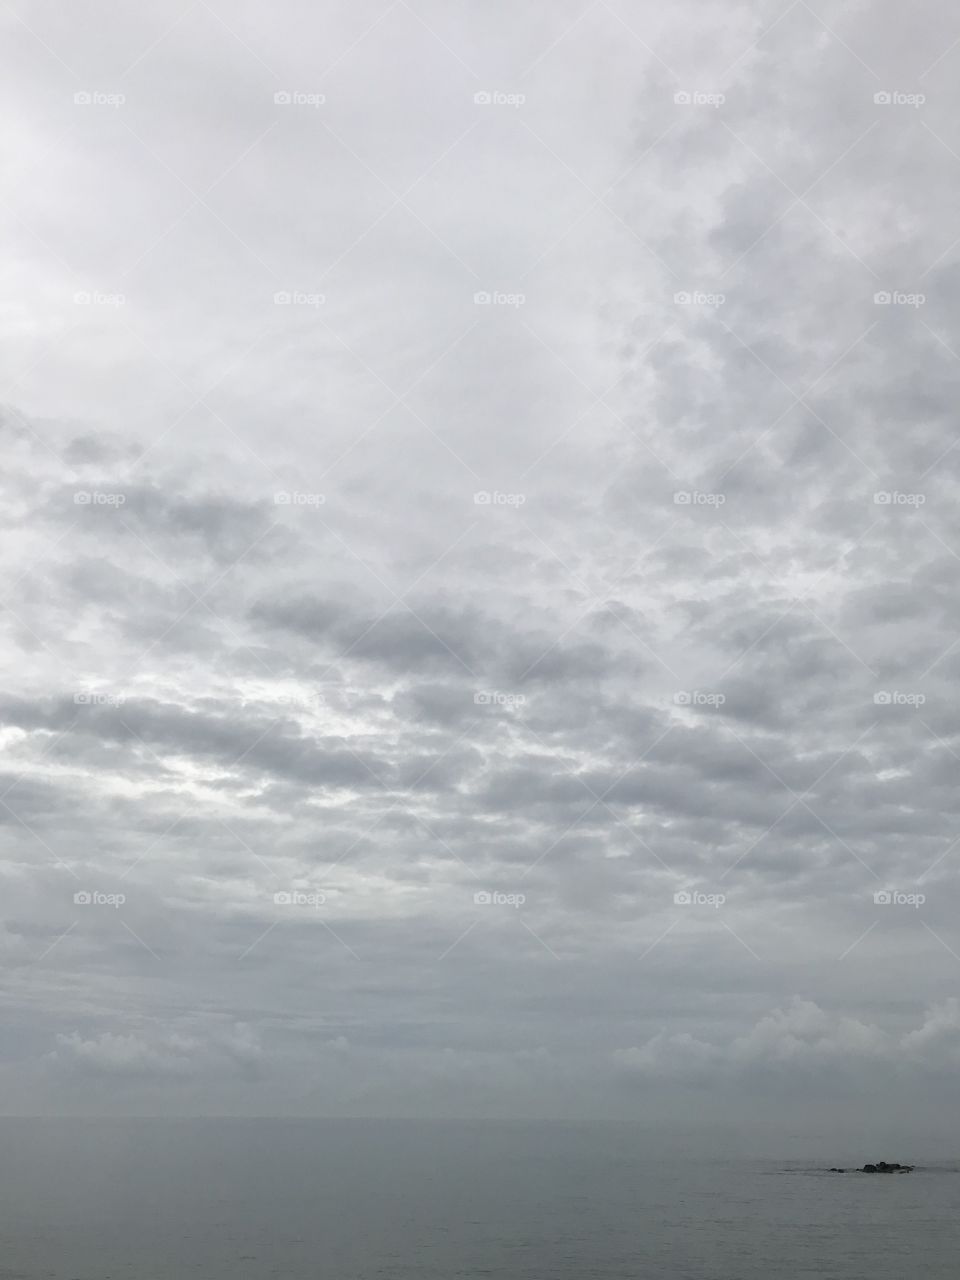 Ocean meets sky 